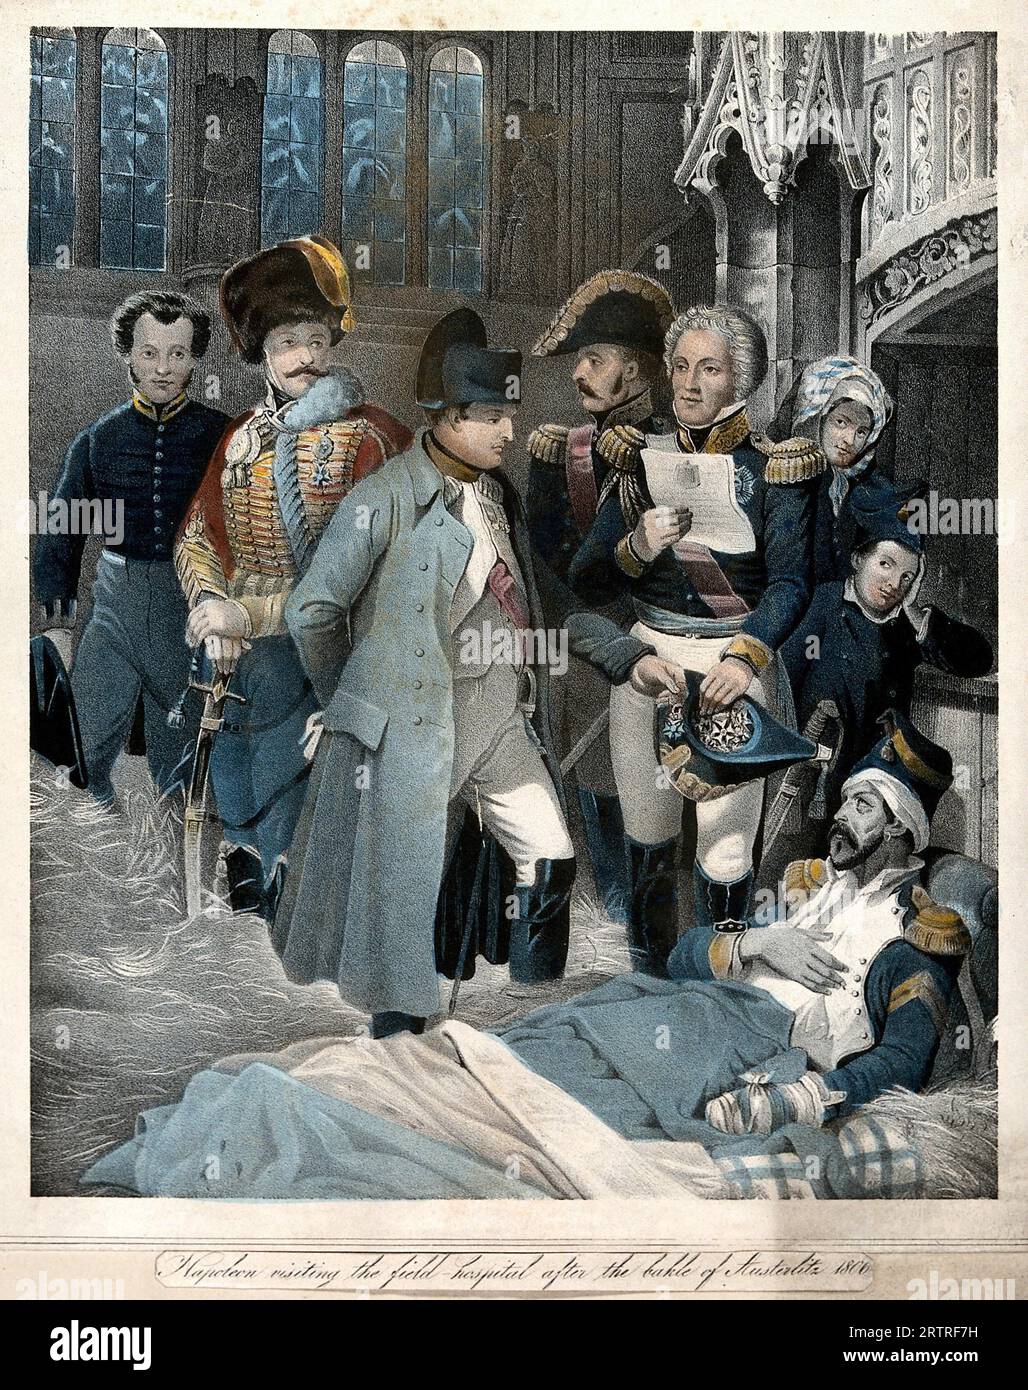 Bataille d'Austerlitz, Napoléon visite des soldats blessés dans une église utilisée comme hôpital de campagne après la bataille, lithographie colorée 1806 Banque D'Images